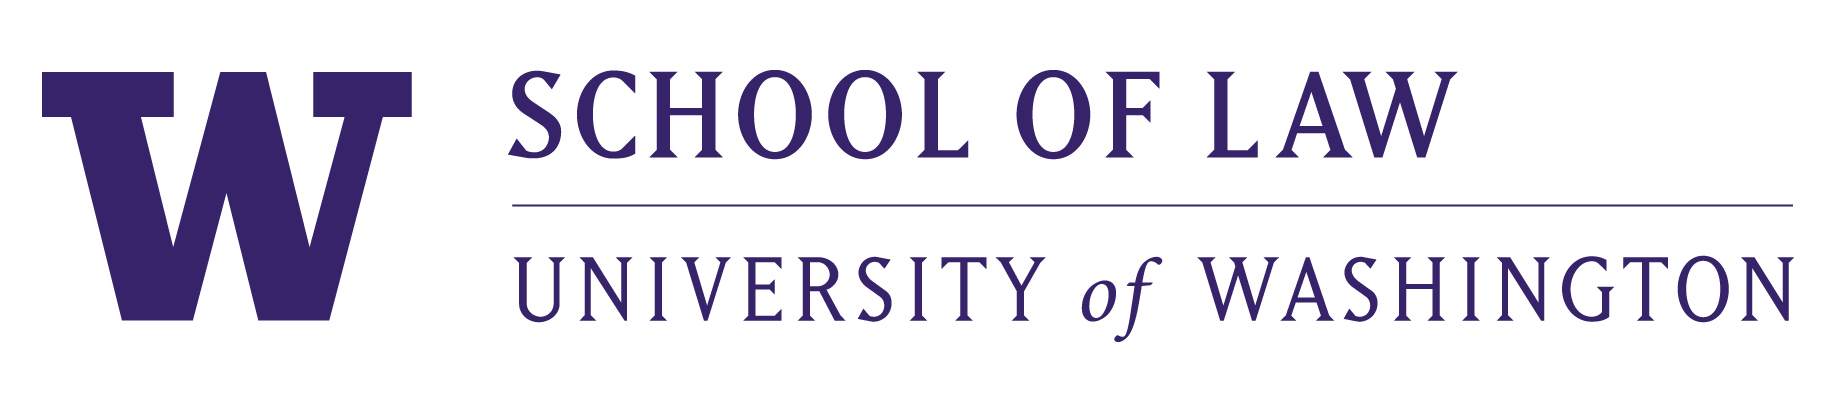 UW School of Law Logo.jpg